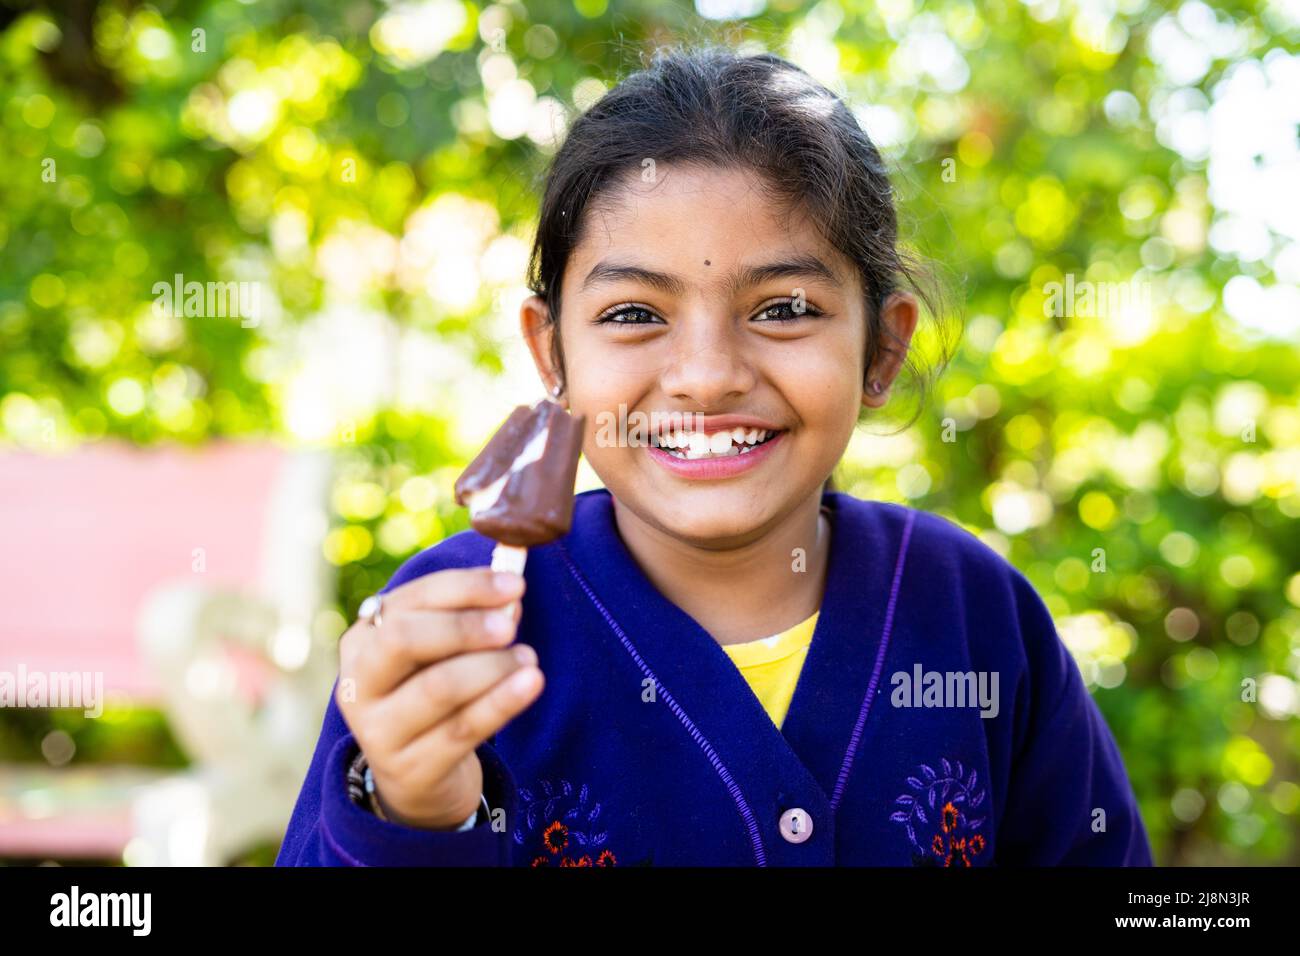 Glücklich lächelndes Mädchen Kind im Winter tragen Eis essen im Park - Konzept der Ferien, sorglos und Entspannung. Stockfoto